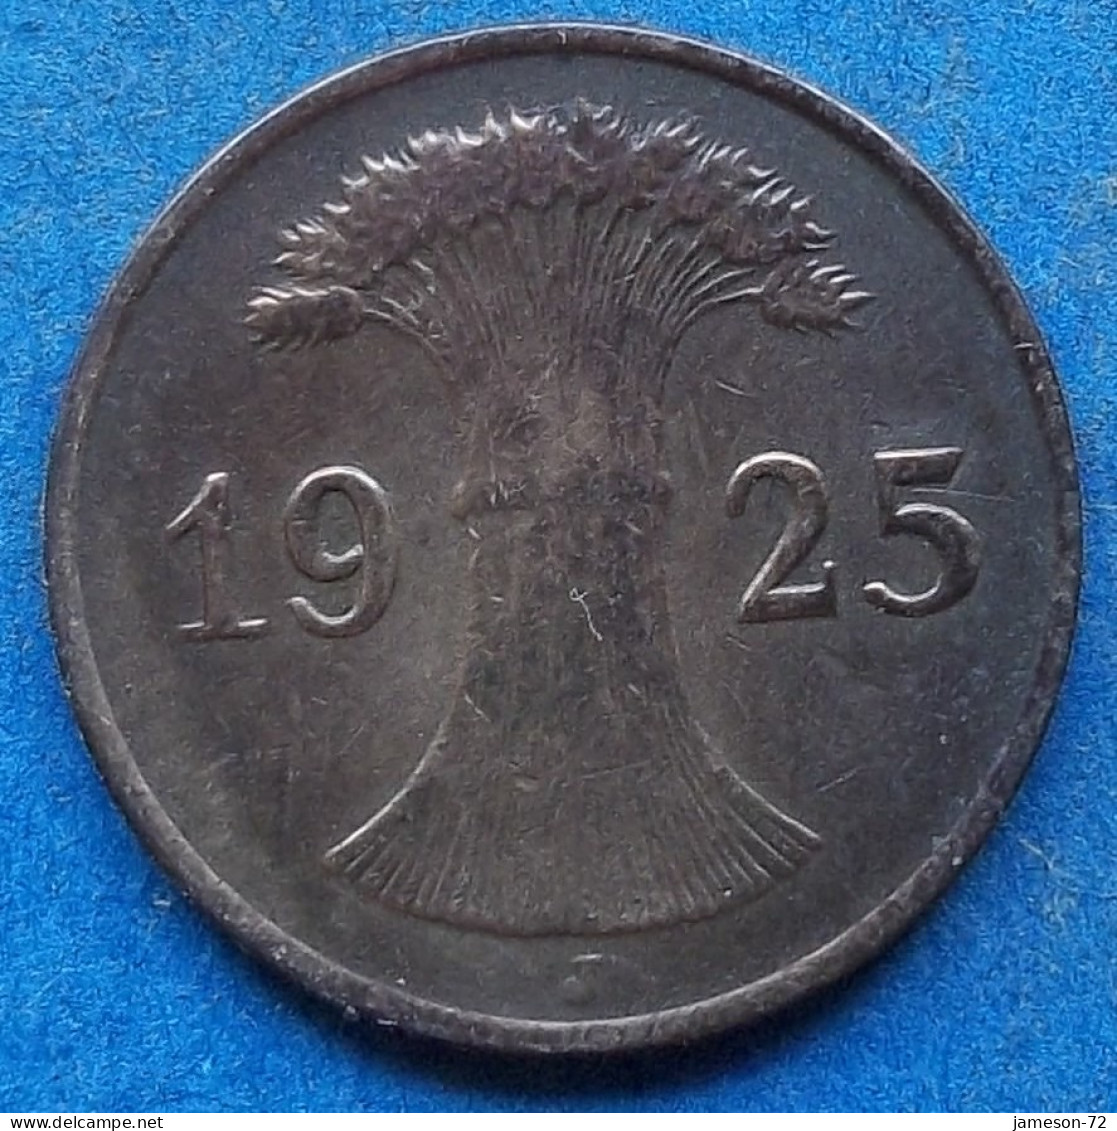 GERMANY - 1 Reichspfennig 1925 J KM# 37 Weimar Republic Reichsmark Coinage (1924-1938) - Edelweiss Coins - 1 Renten- & 1 Reichspfennig